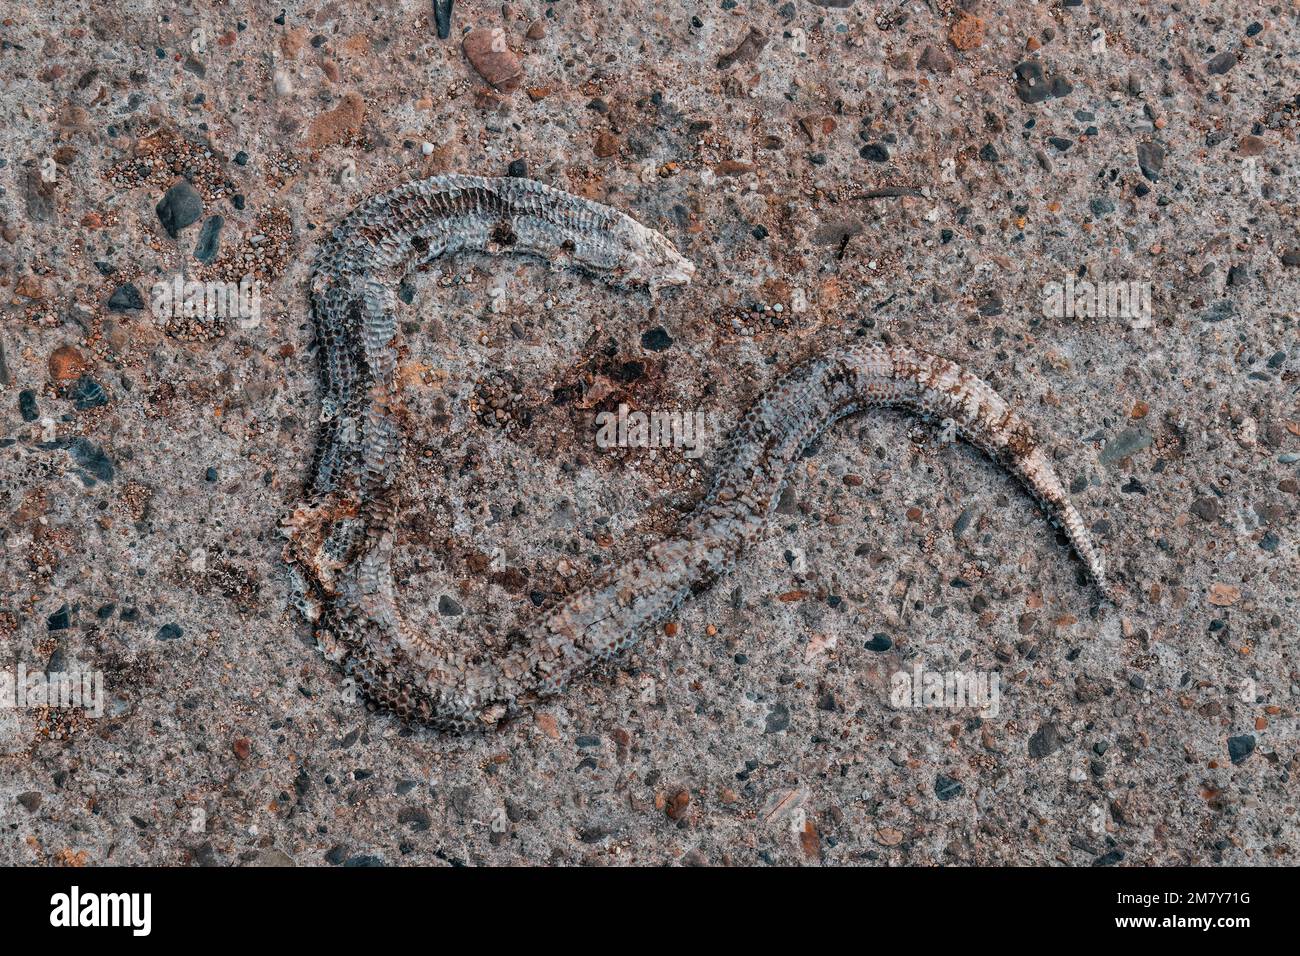 Serpente pelle di slough su una superficie concreta, primo piano. Foto Stock